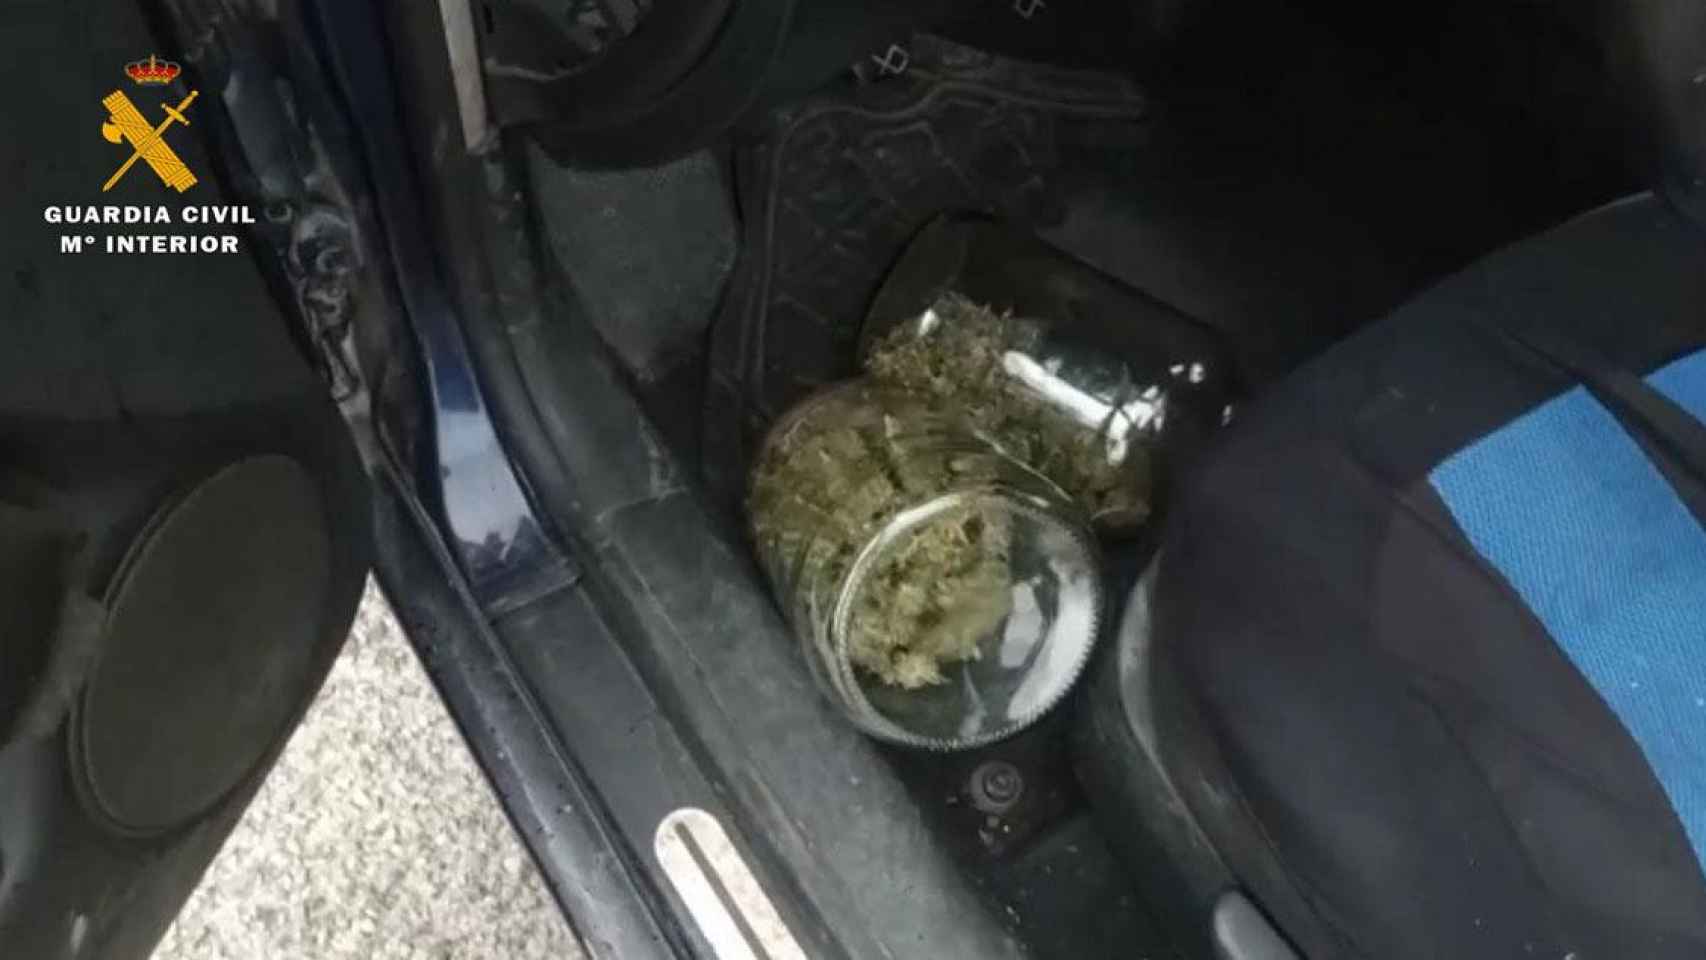 Cogollos de marihuana en el interior de un vehículo, en una imagen de archivo / EUROPA PRESS